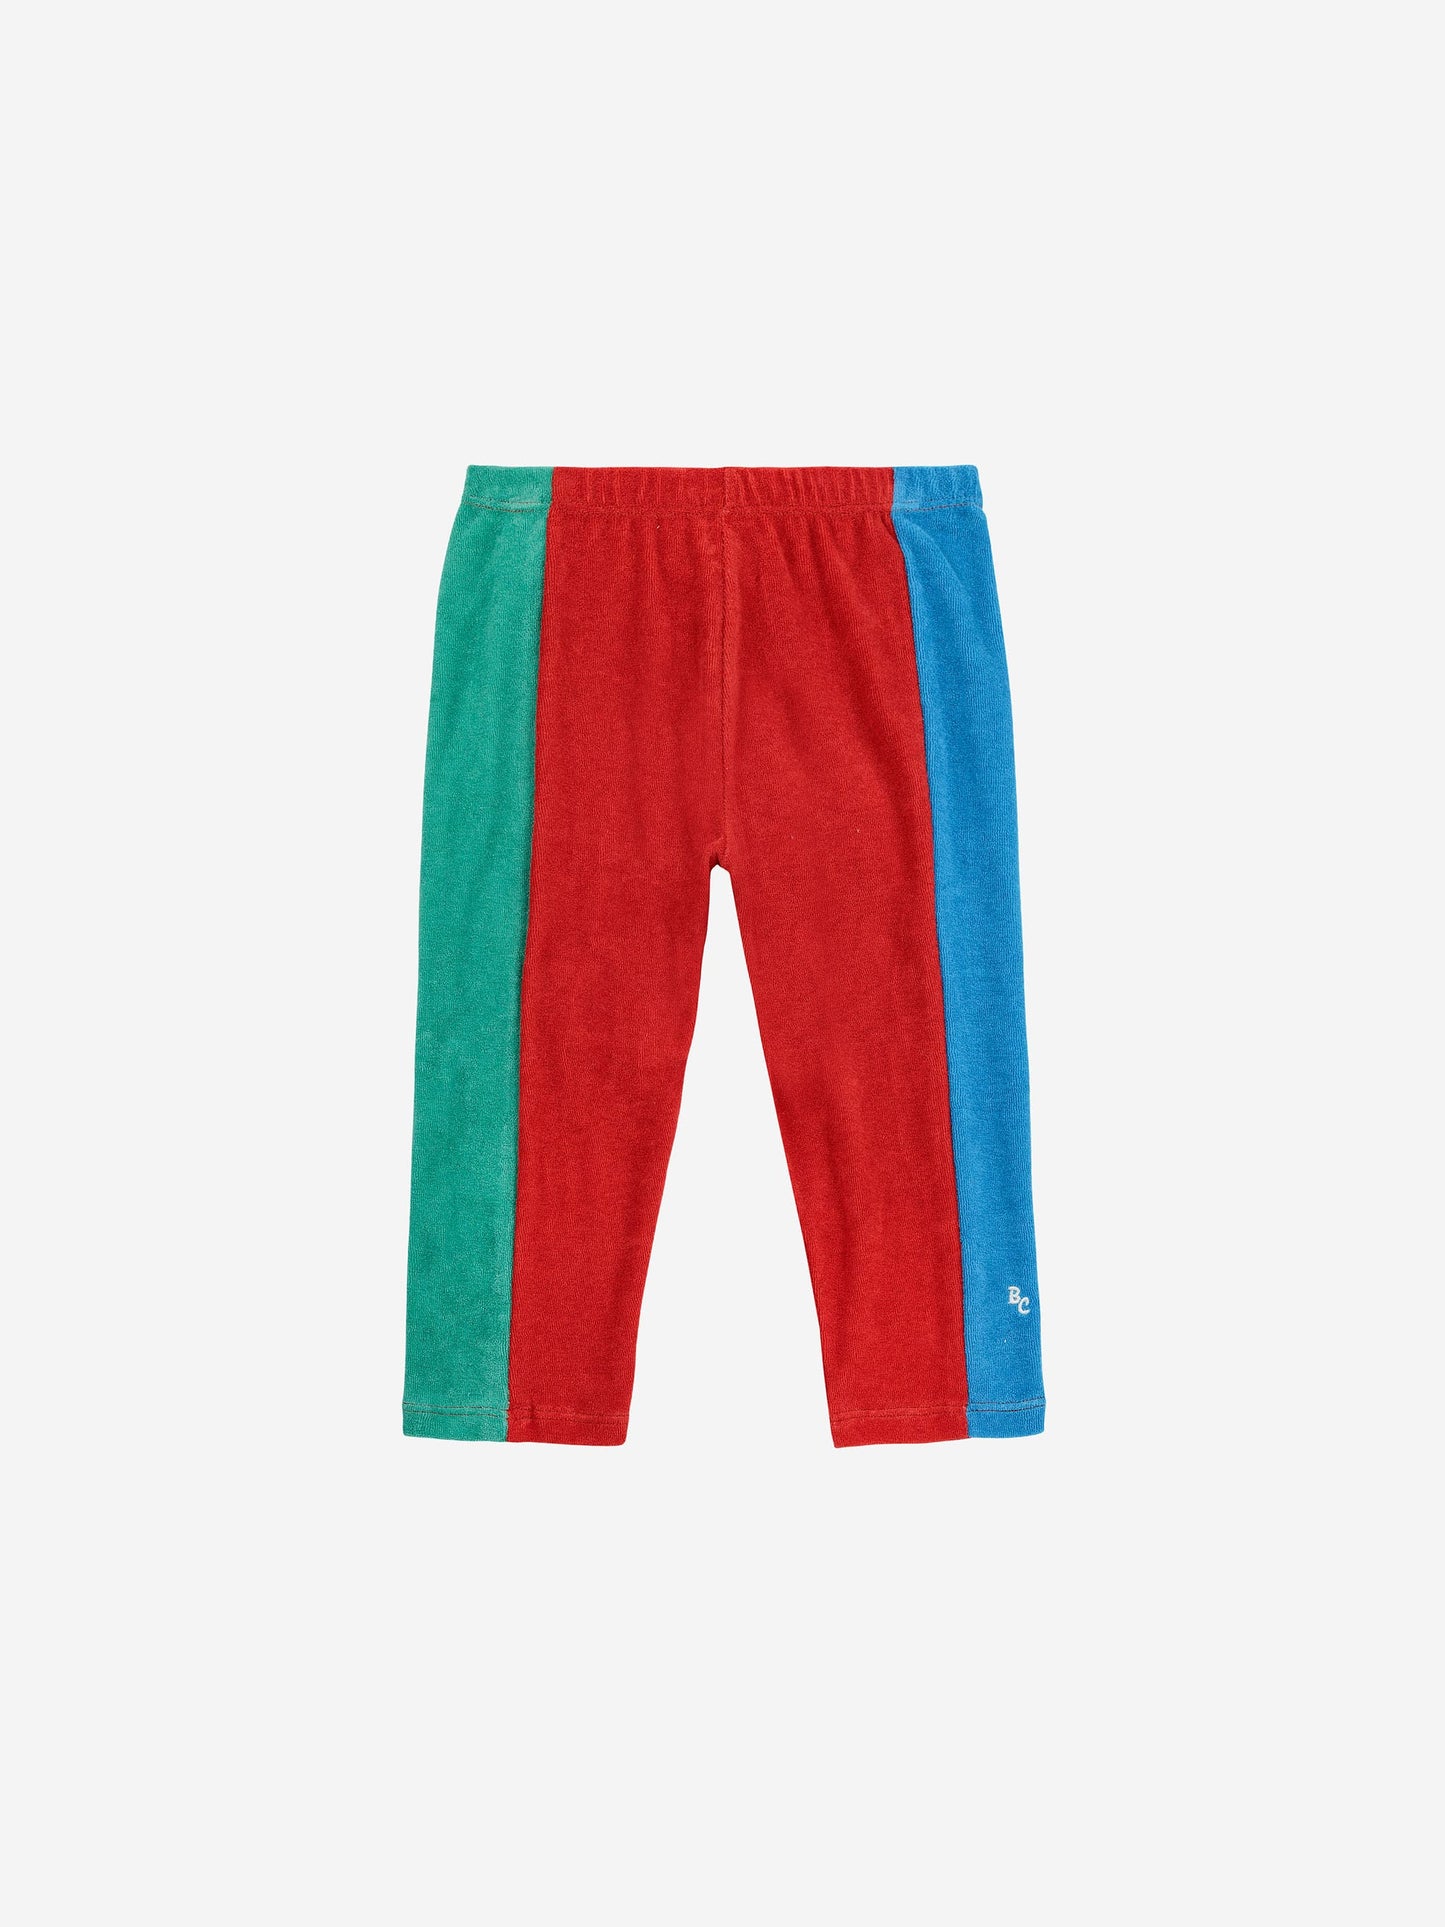 Olympic color block leggings